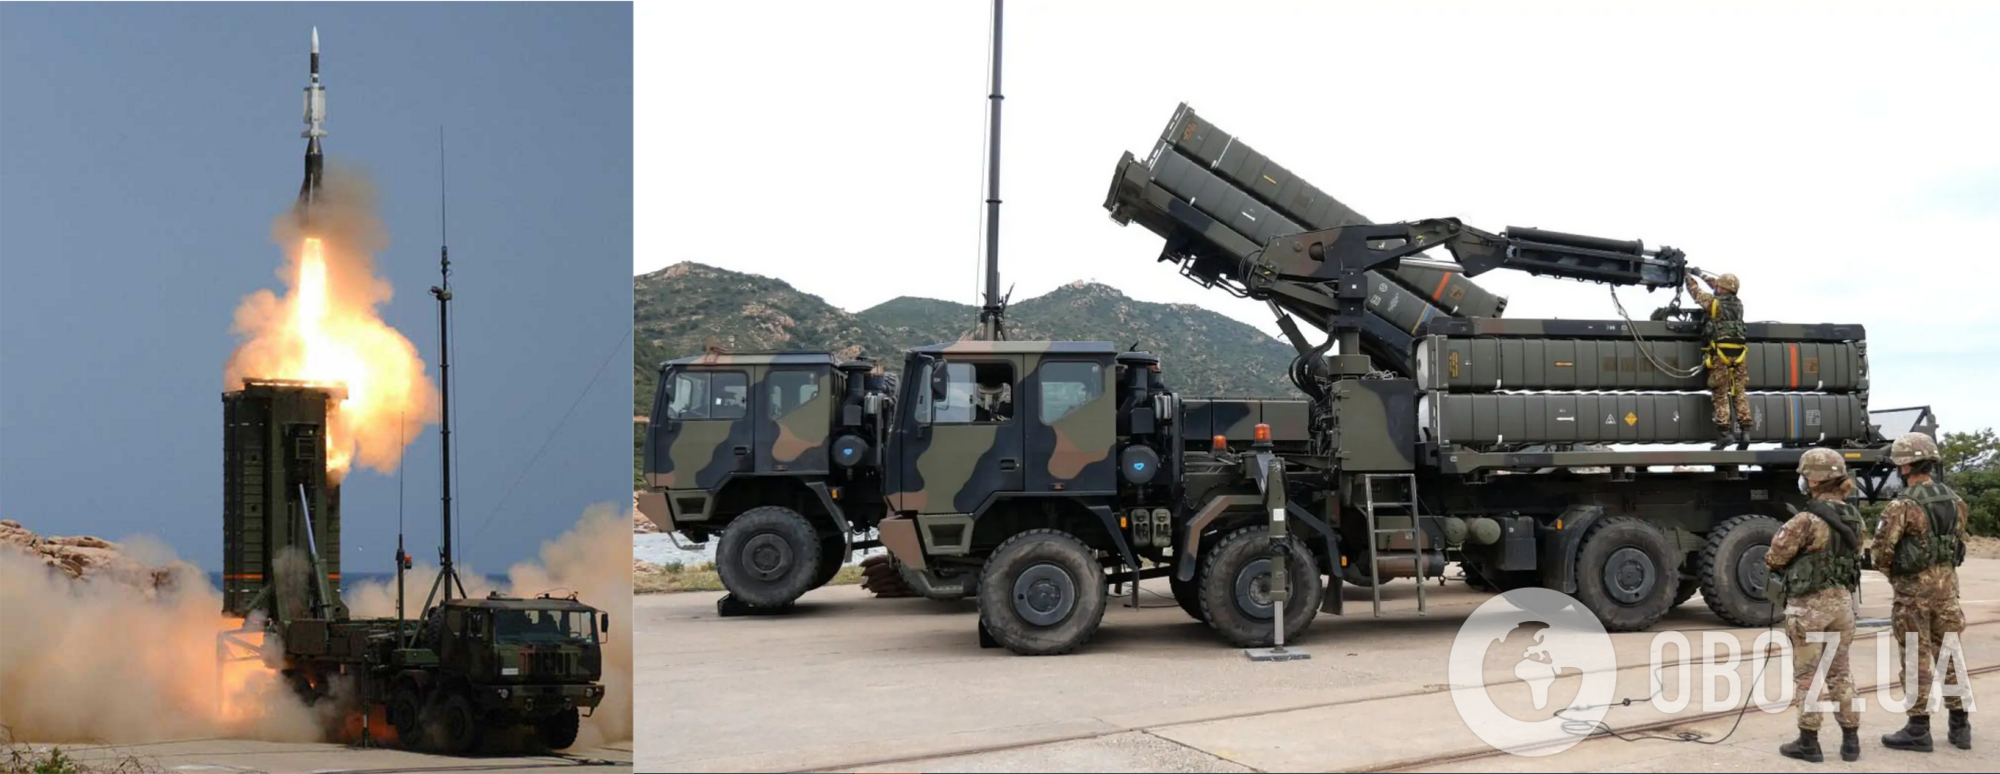 В Украину прибыла современная система ПВО SAMP/T от Италии и Франции – La Stampa